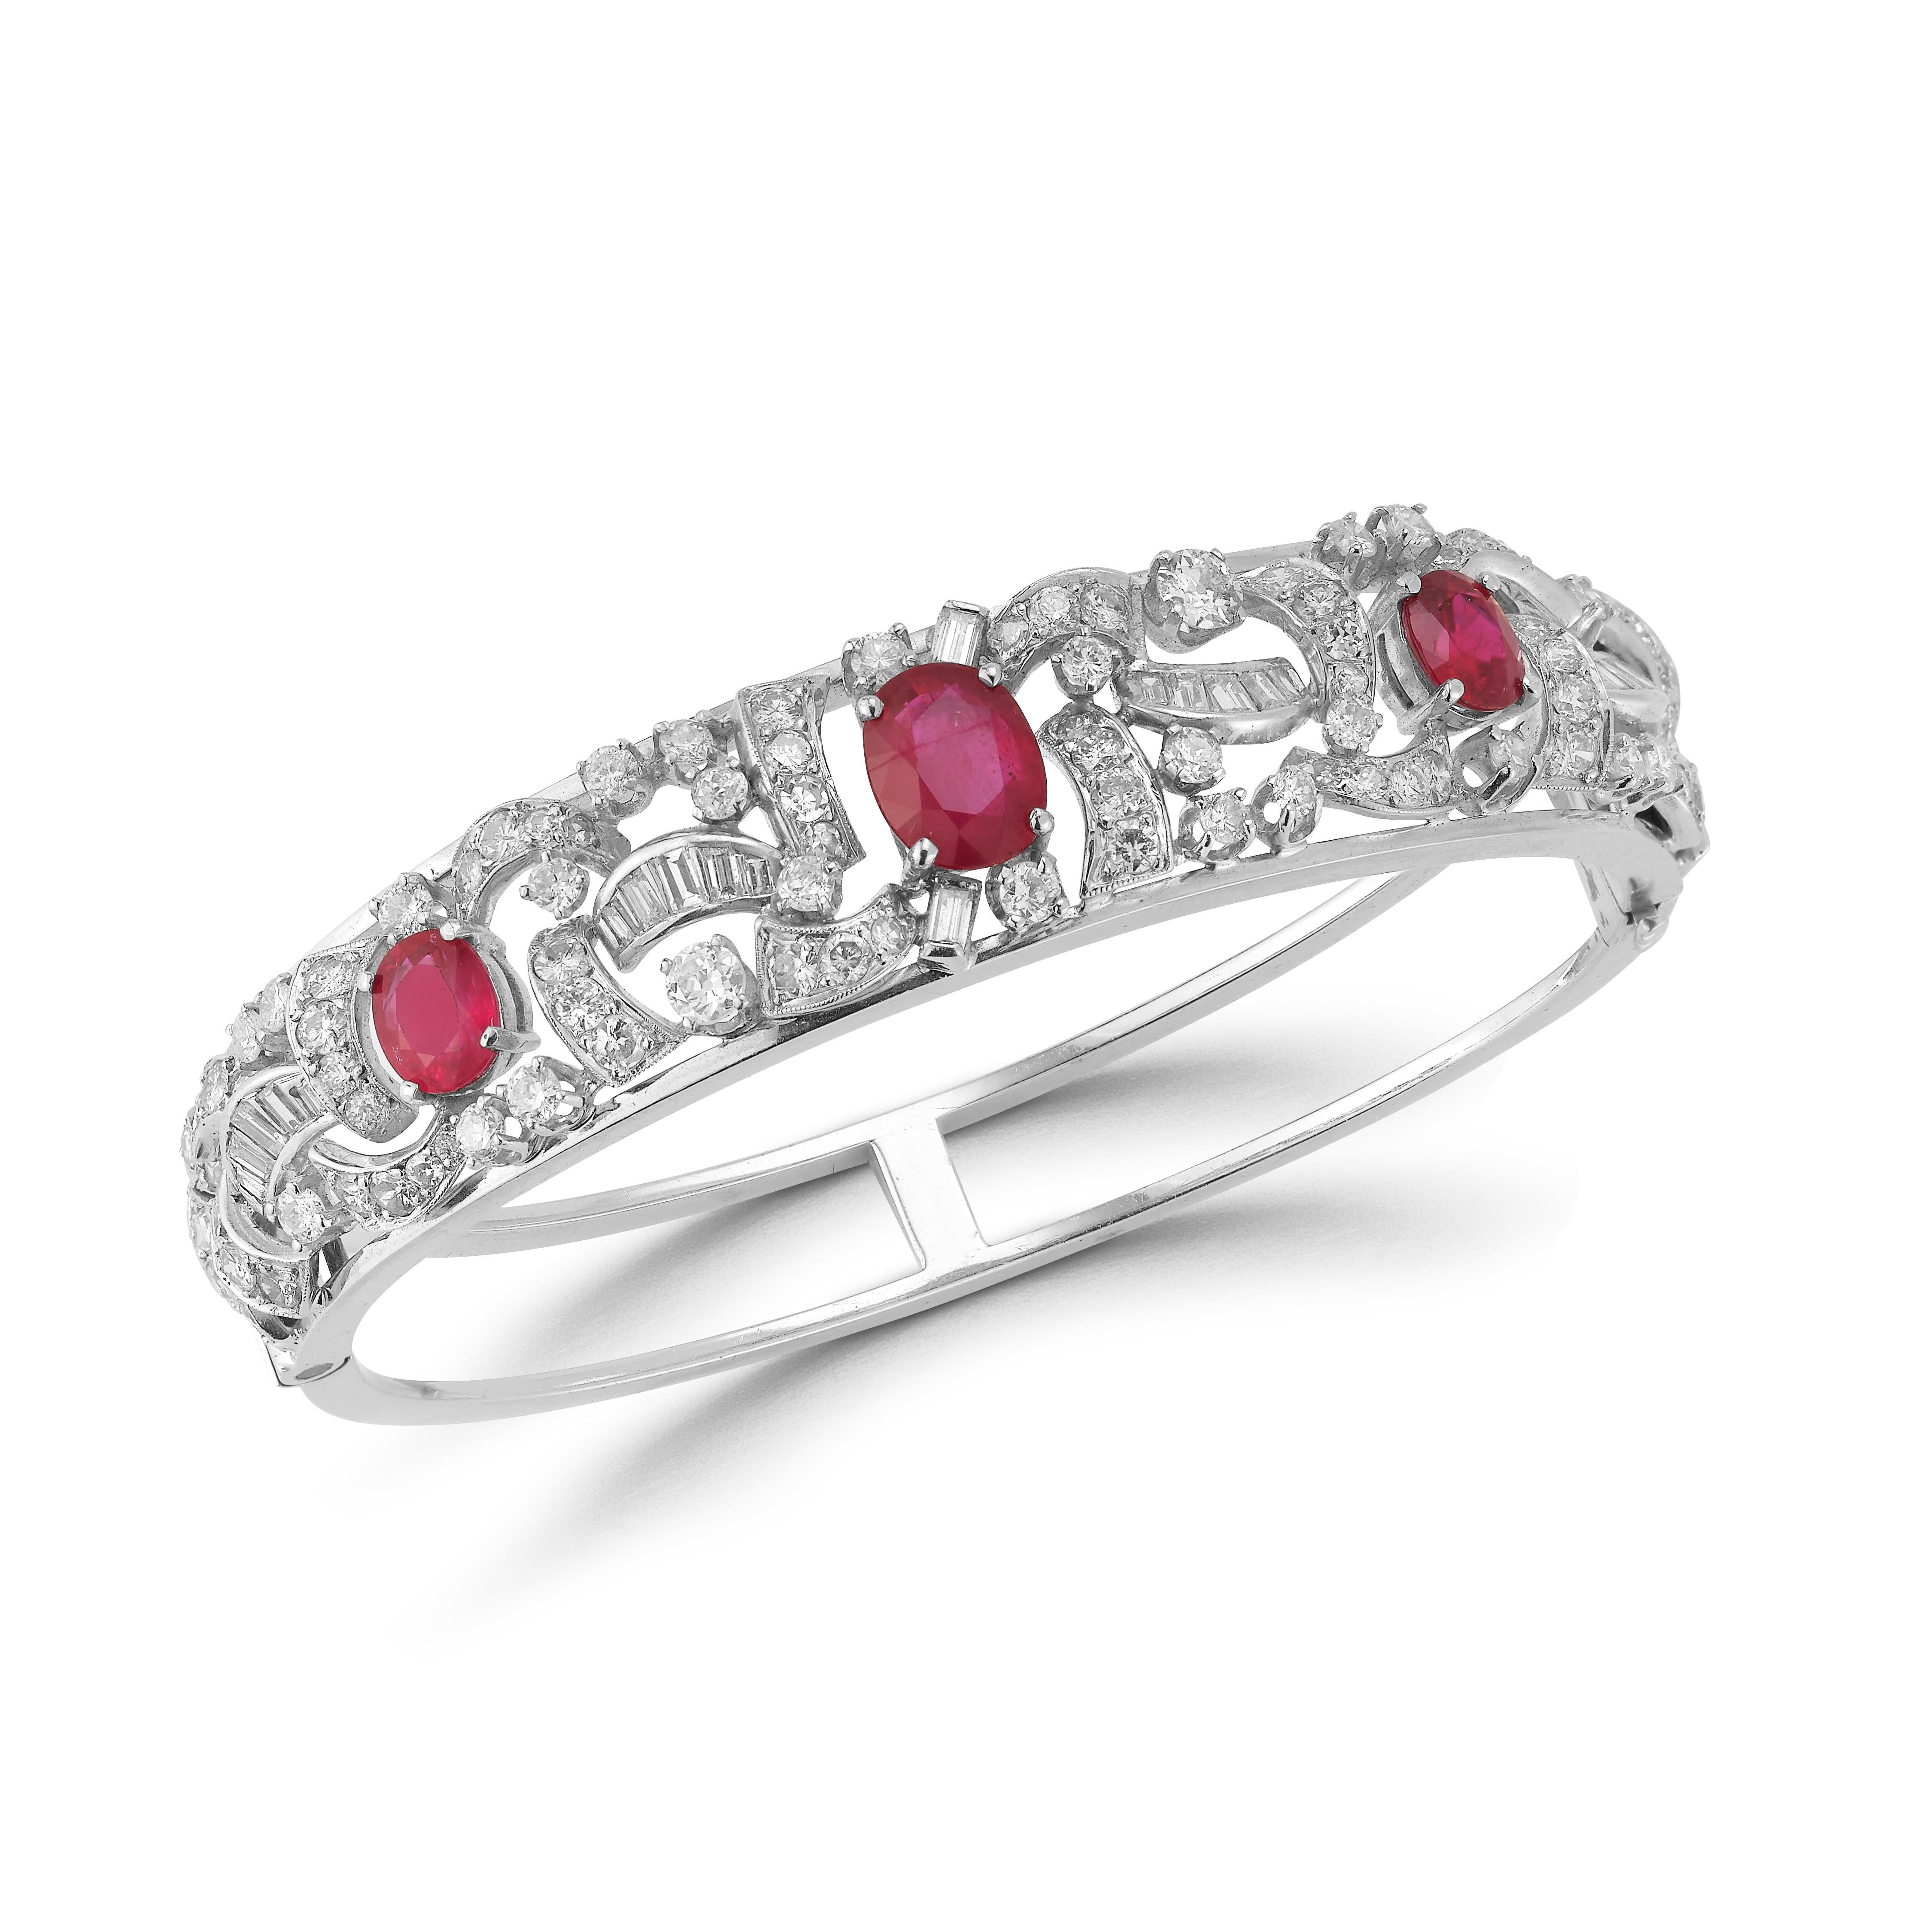 Oval Cut Ruby & Diamond Bangle Bracelet 3 oval geschliffene Rubine, umgeben von runden und Baguette geschliffenen Diamanten, gefasst in 14k Weißgold.

Rubin Gewicht: 5,26 ct 
Gewicht des Diamanten: 4,45 Karat 

Abmessungen: 2,25